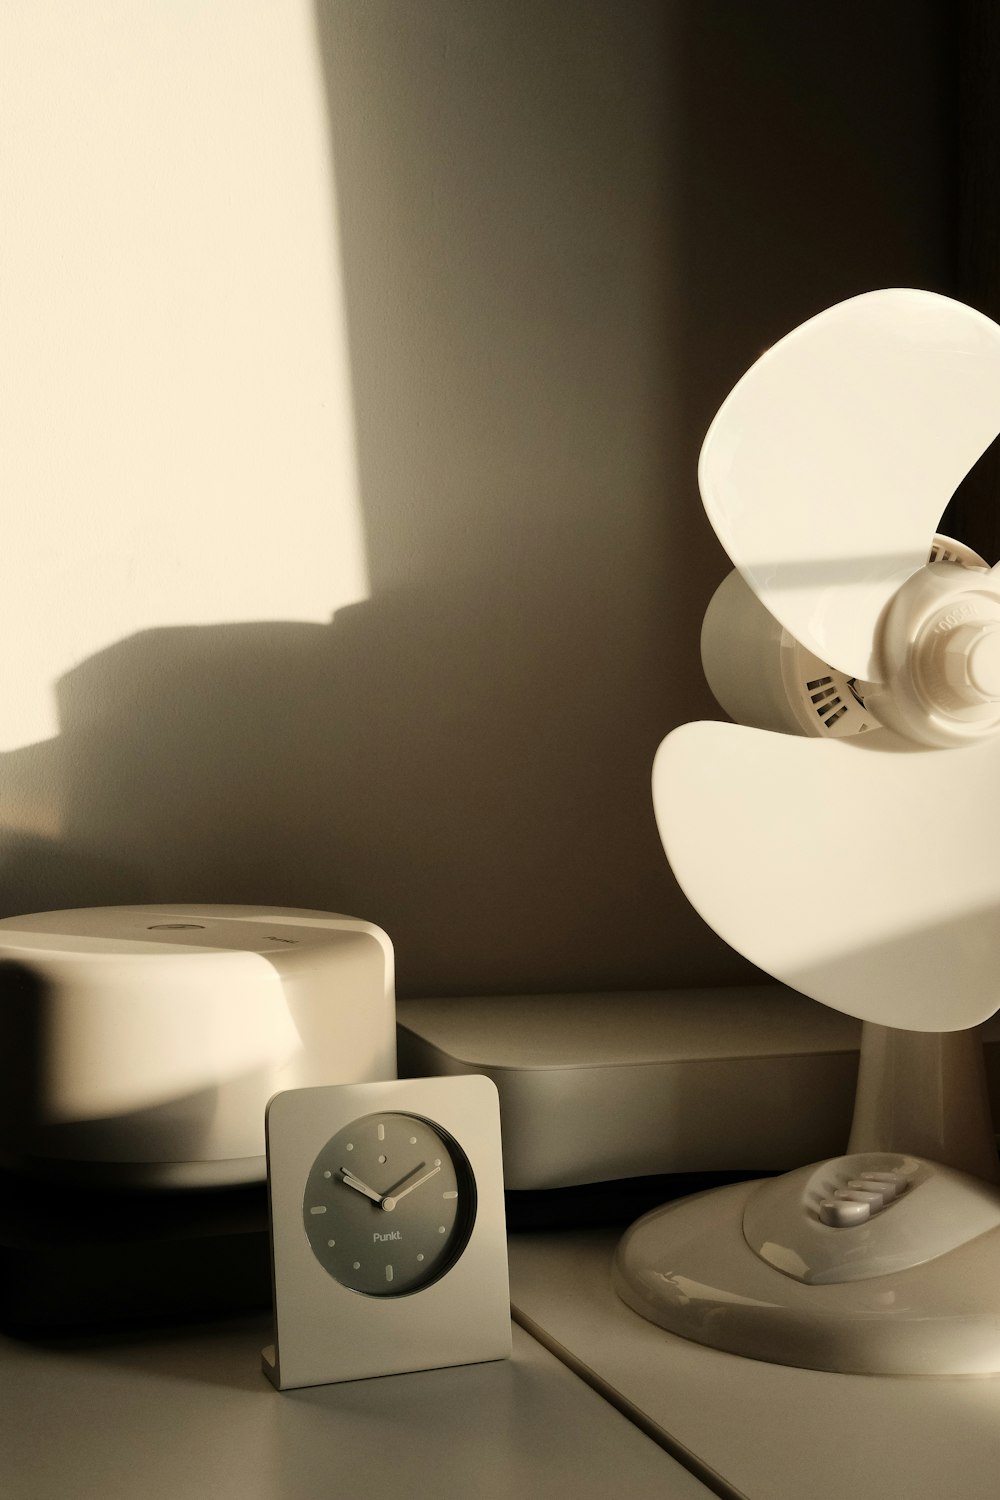 une horloge posée sur une table à côté d’une lampe